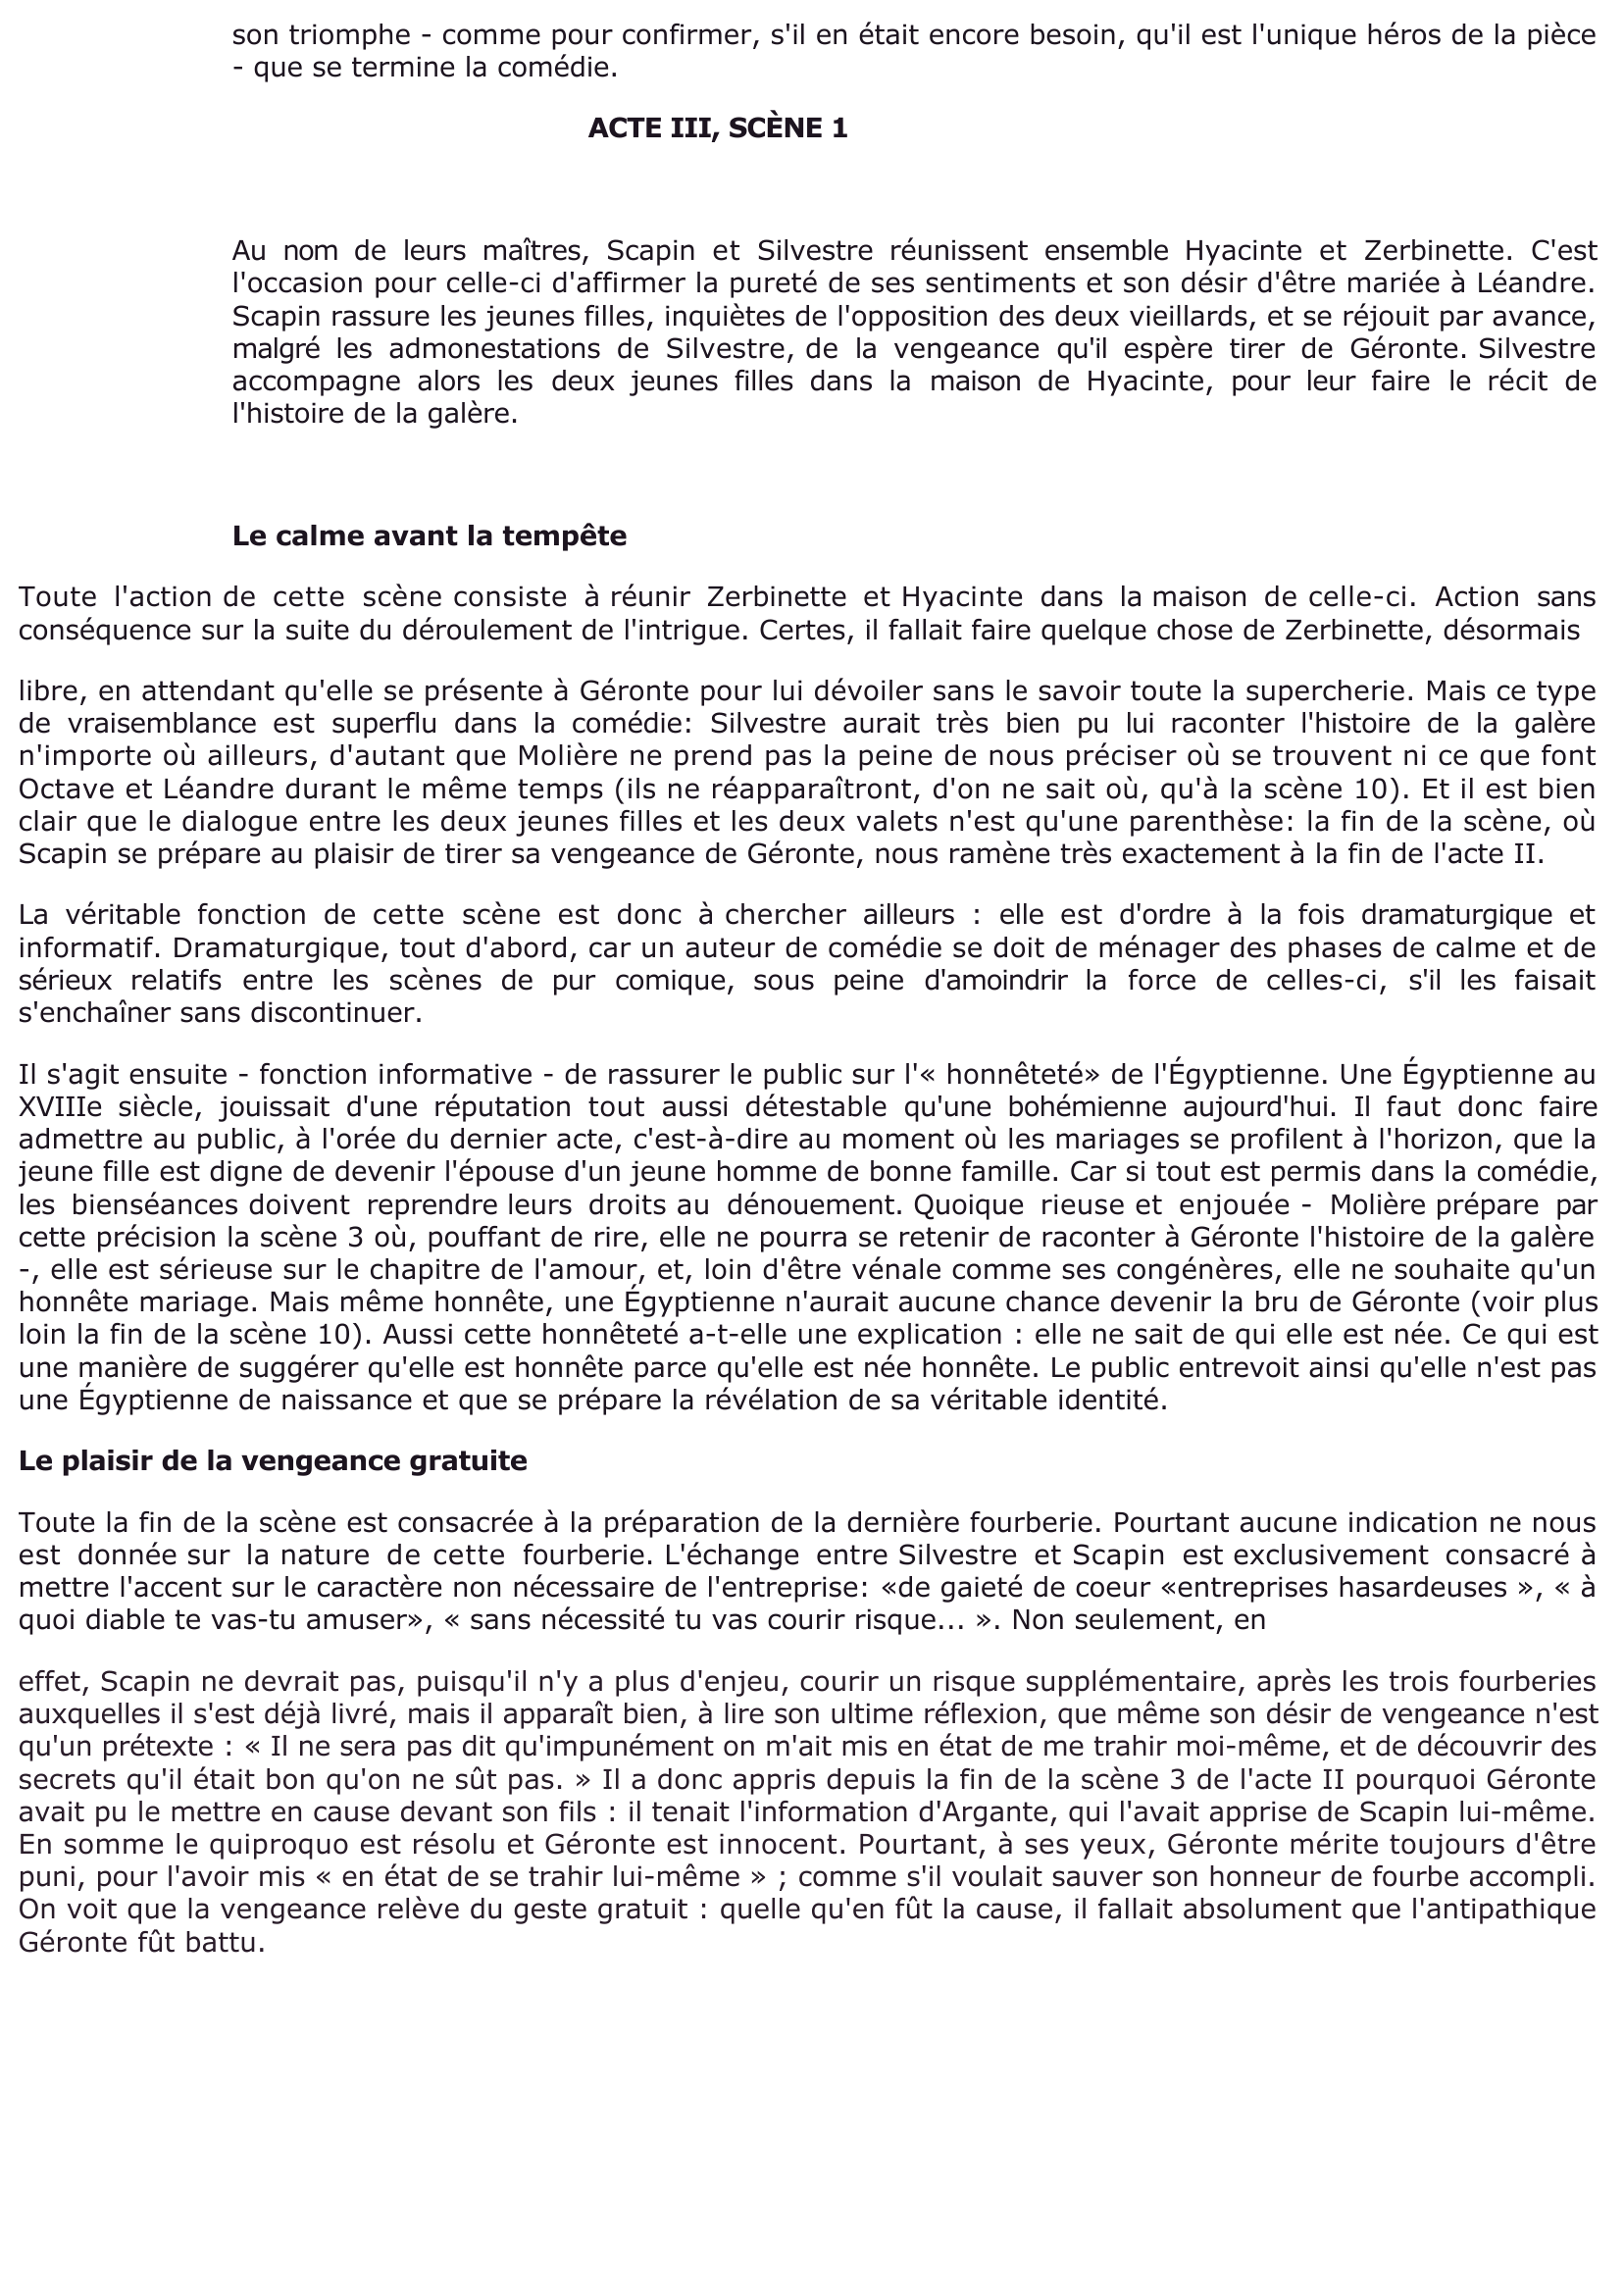 Prévisualisation du document ACTE III, SCÈNE 1 (Fourberies de Scapin de Molière)